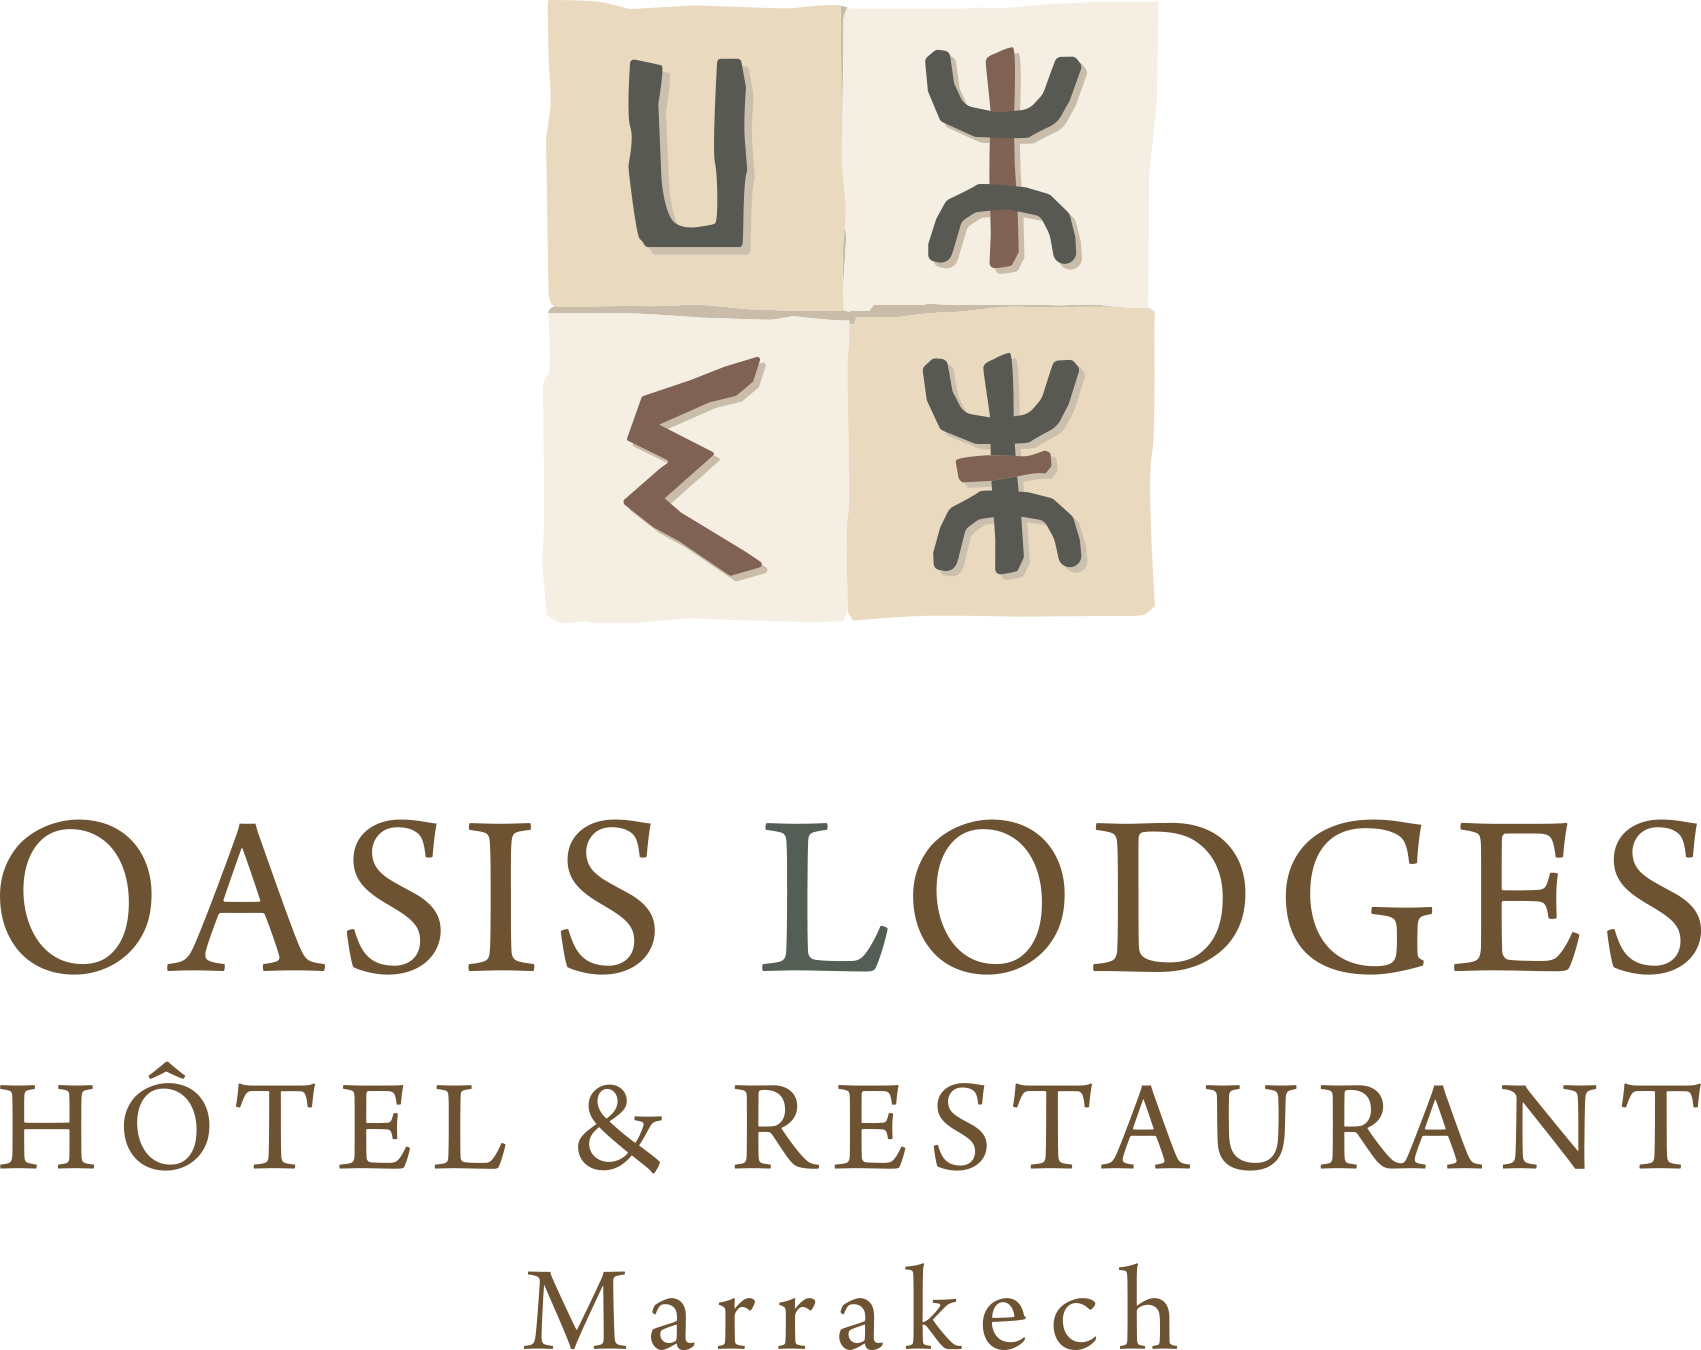 Oasis Lodges Hotel Restaurant Logo PNG